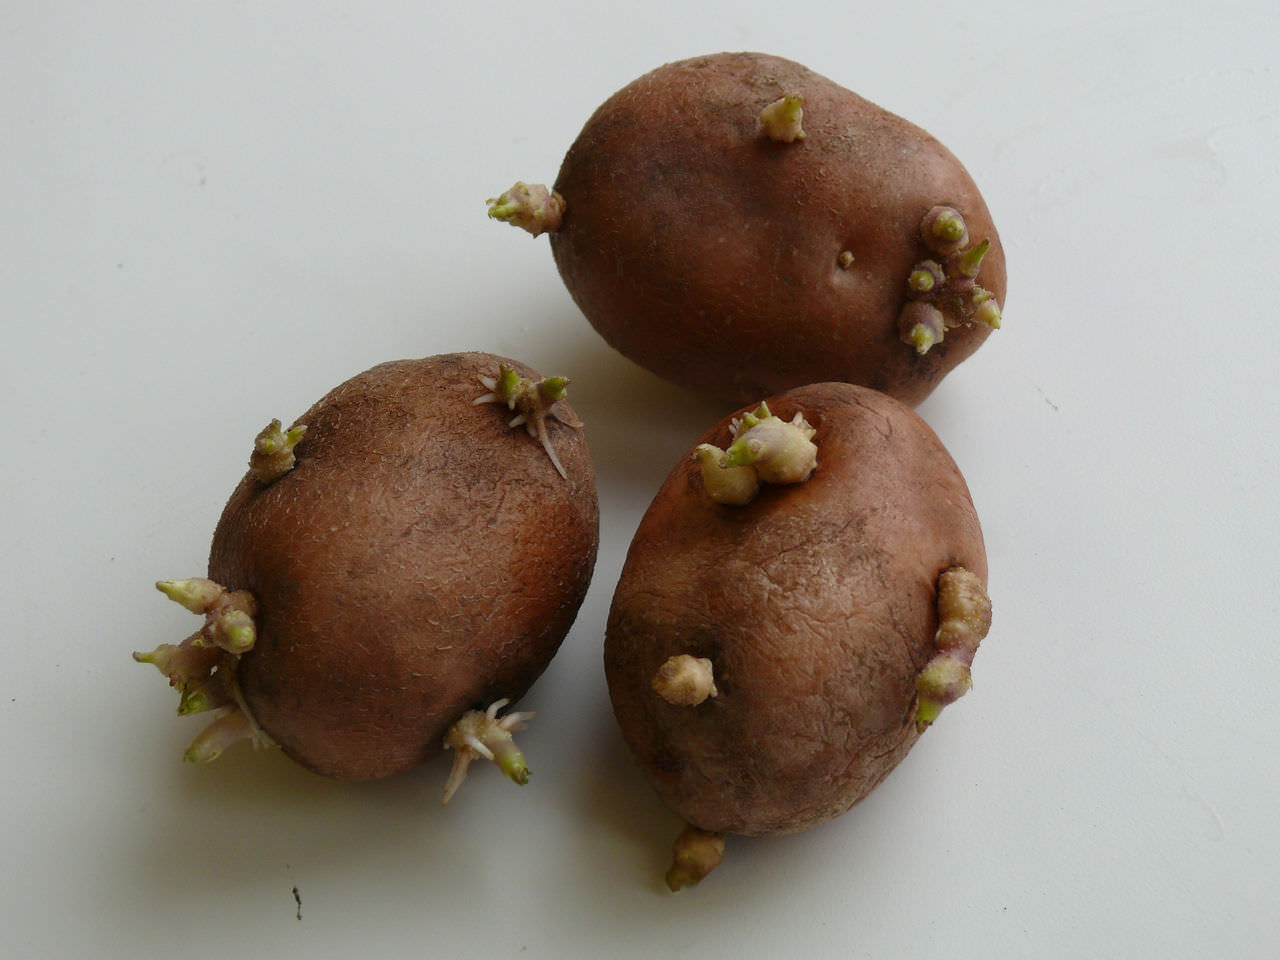 Клубни картофеля прорастание